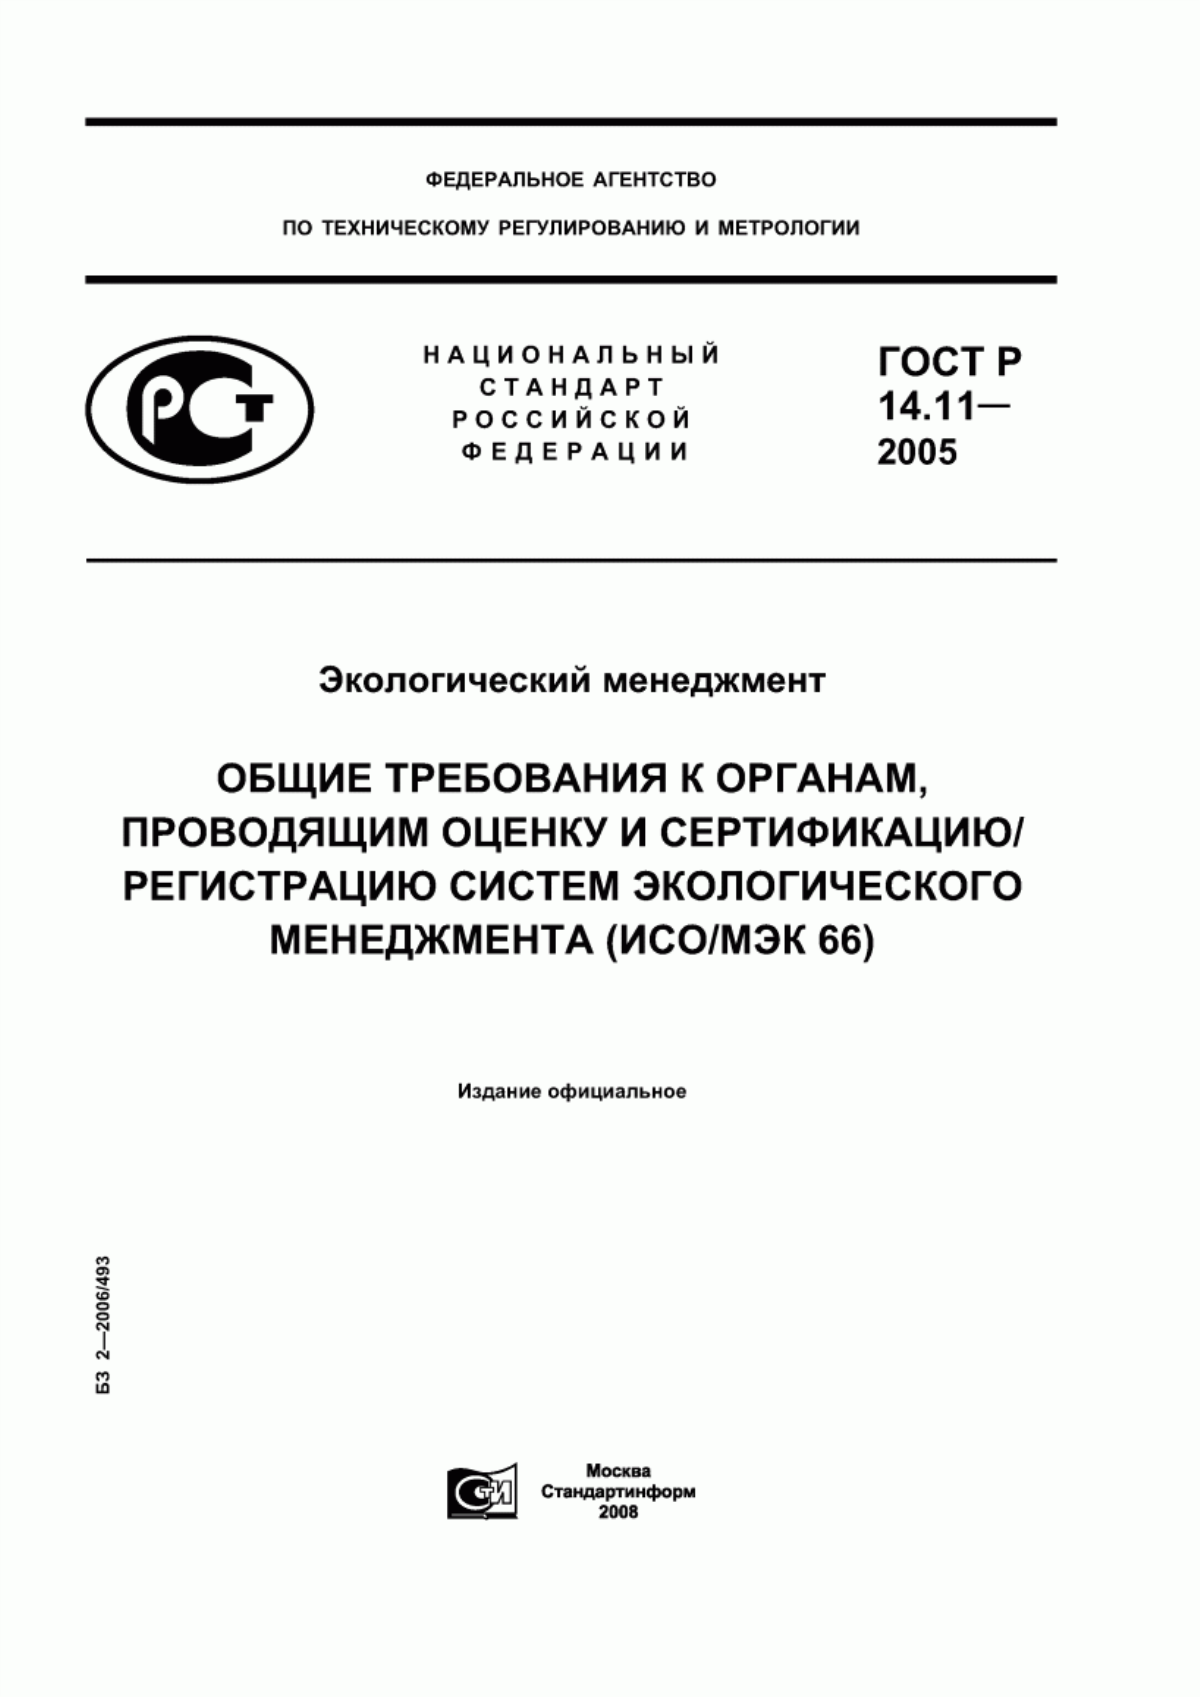 ГОСТ Р 14.11-2005 Экологический менеджмент. Общие требования к органам, проводящим оценку и сертификацию/регистрацию систем экологического менеджмента (ИСО/МЭК 66)